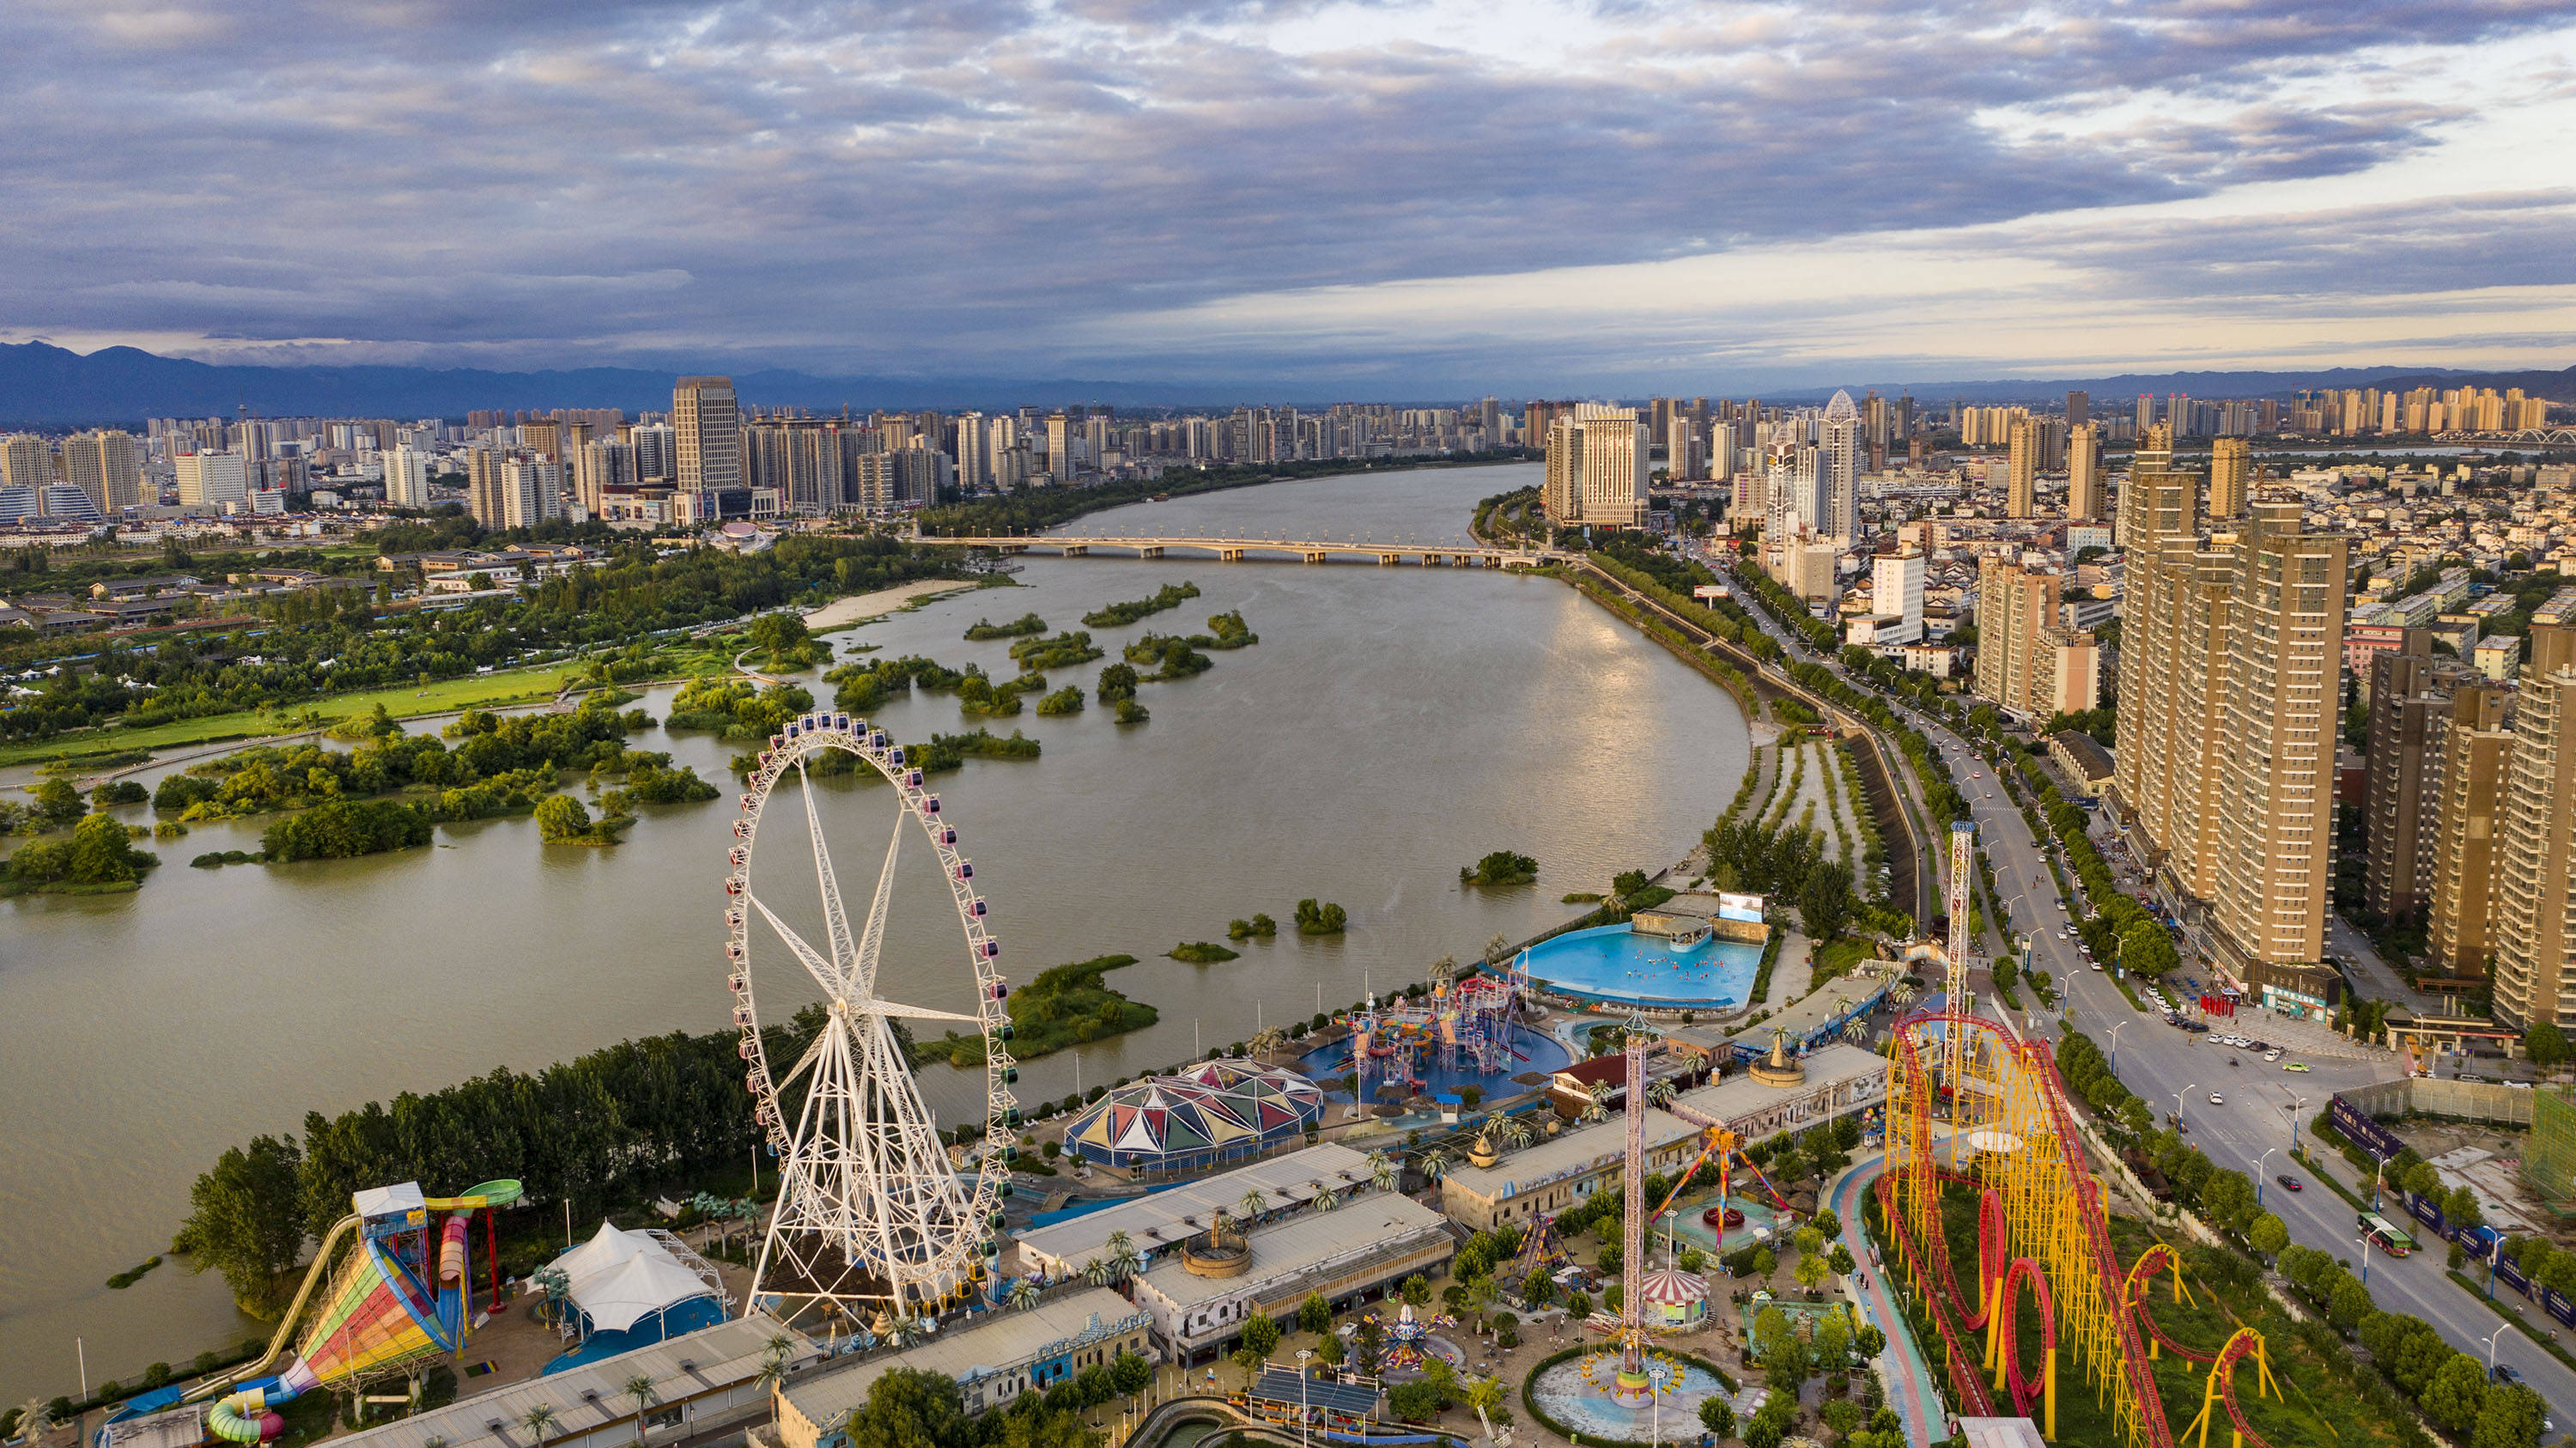 这是7月17日拍摄的汉中市汉江湿地旁的游乐场(无人机照片)